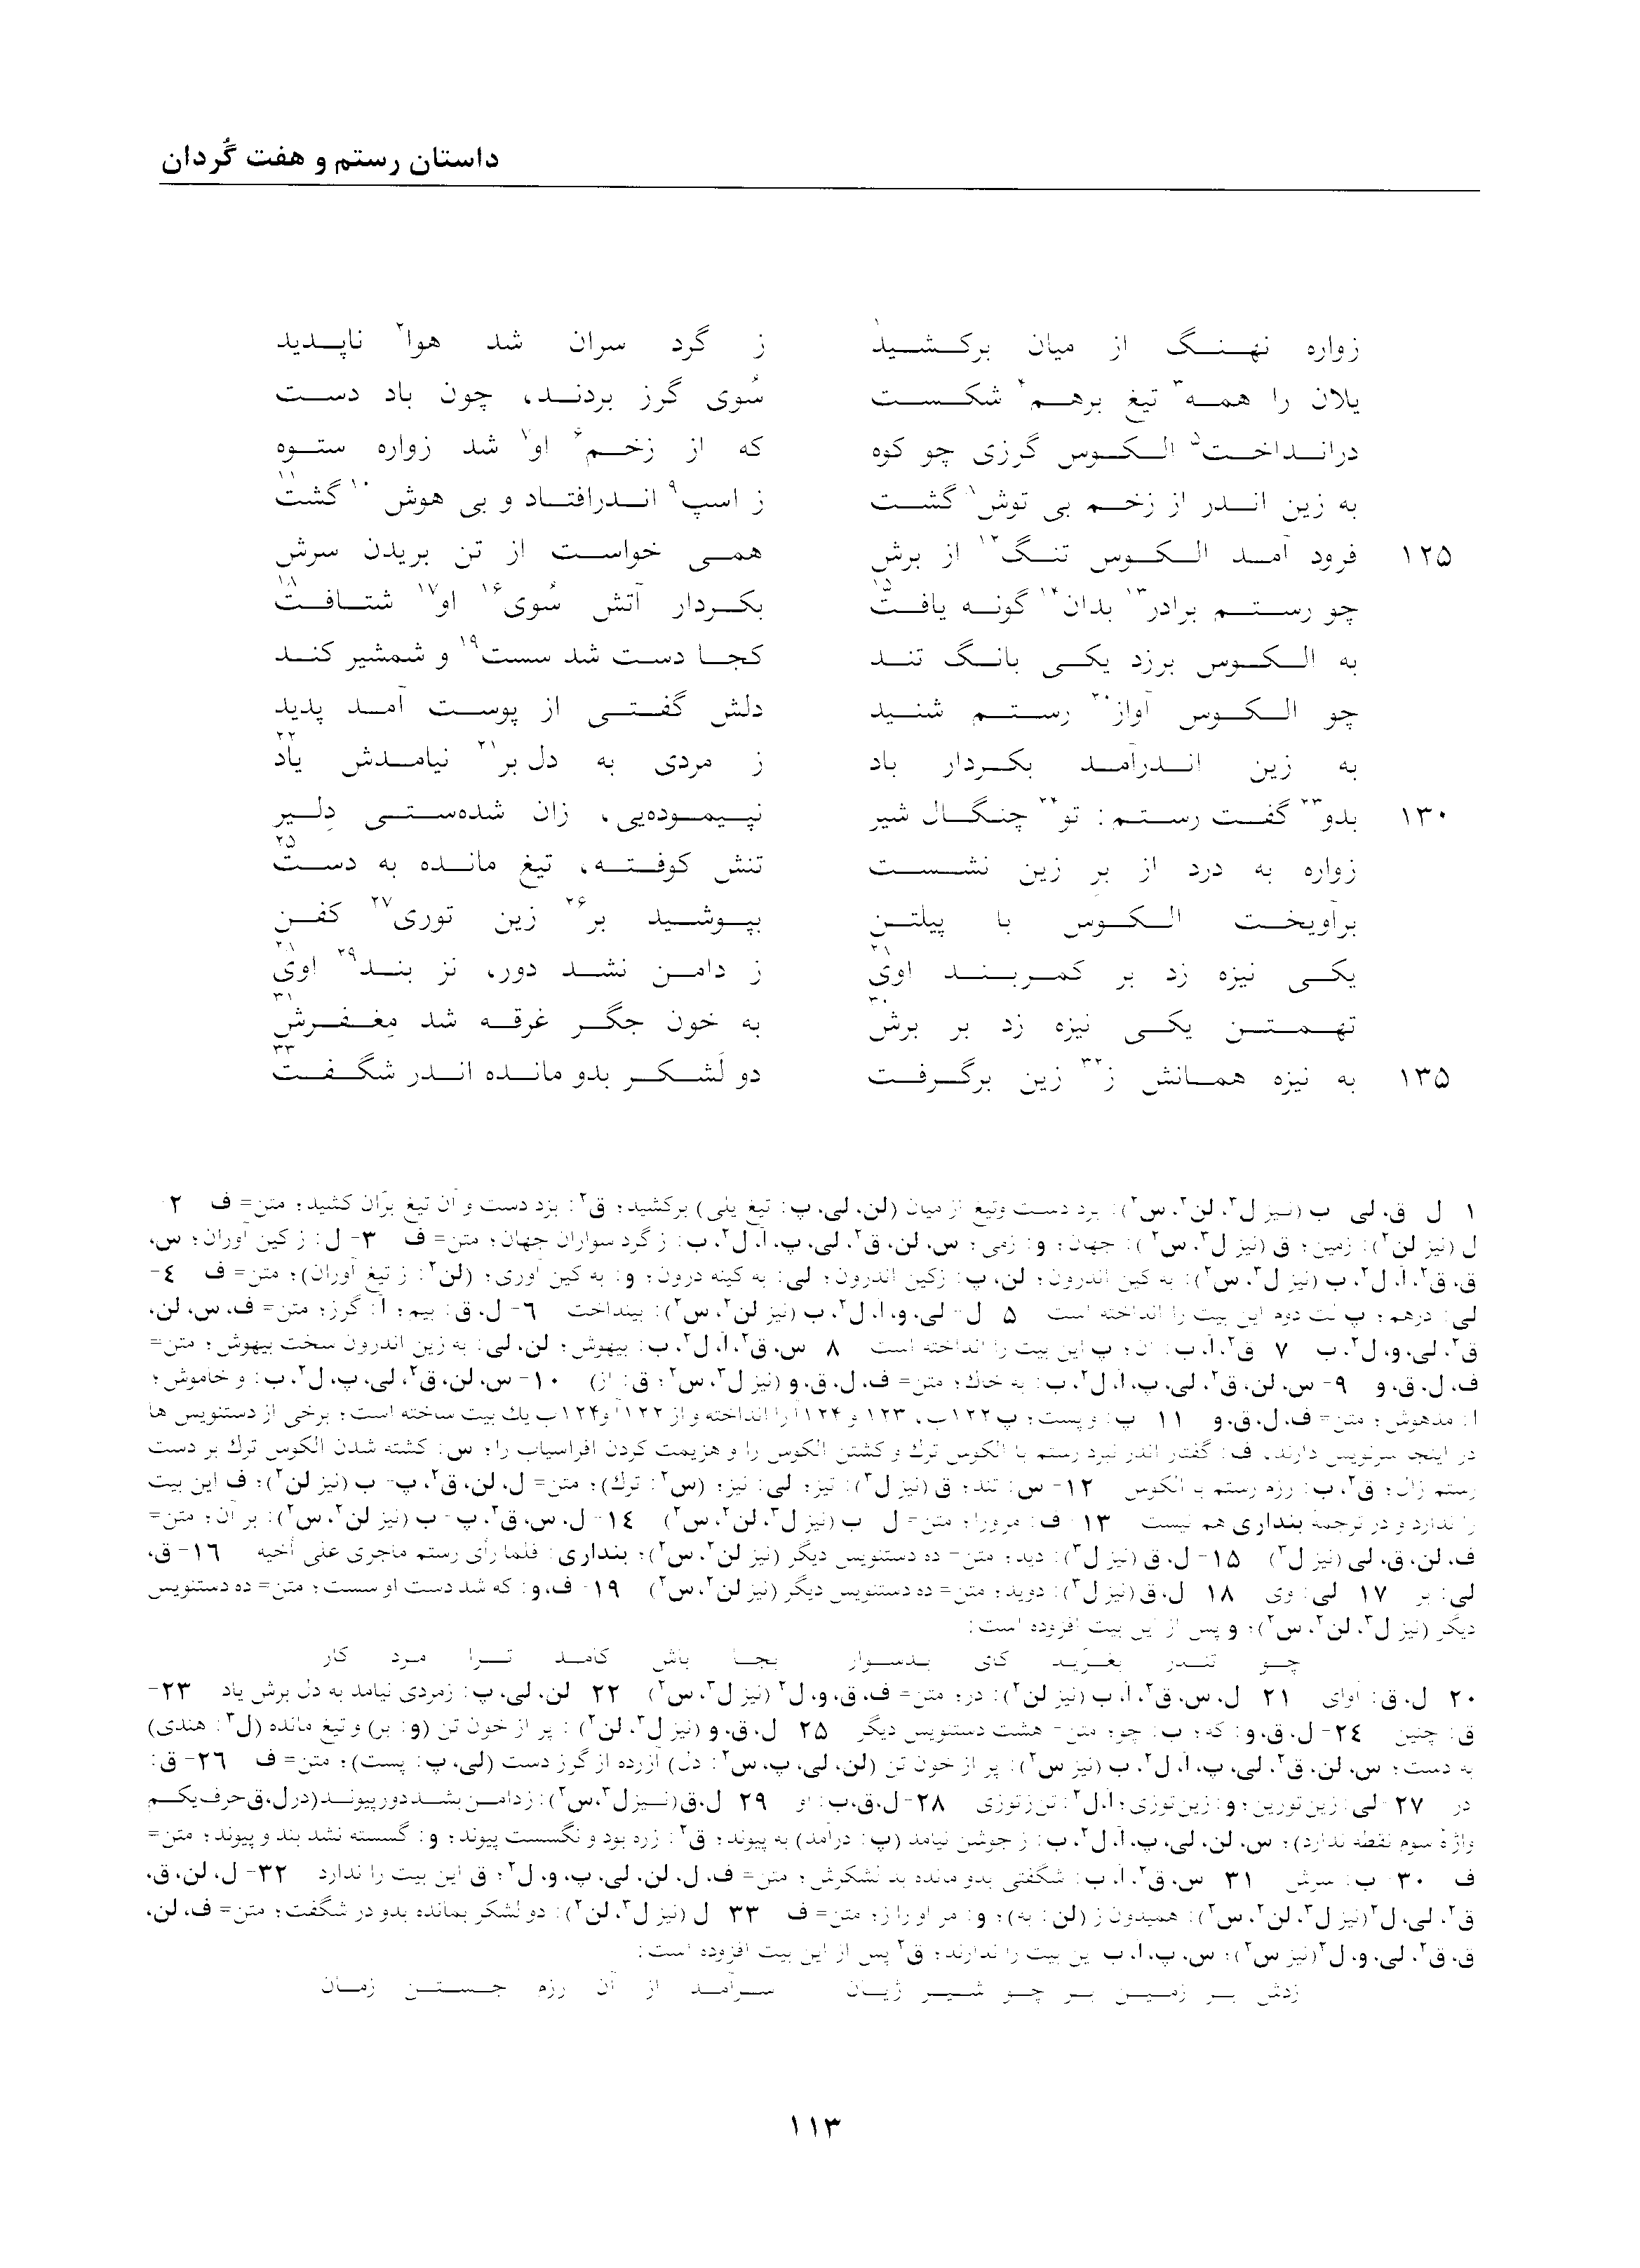 vol. 2, p. 113